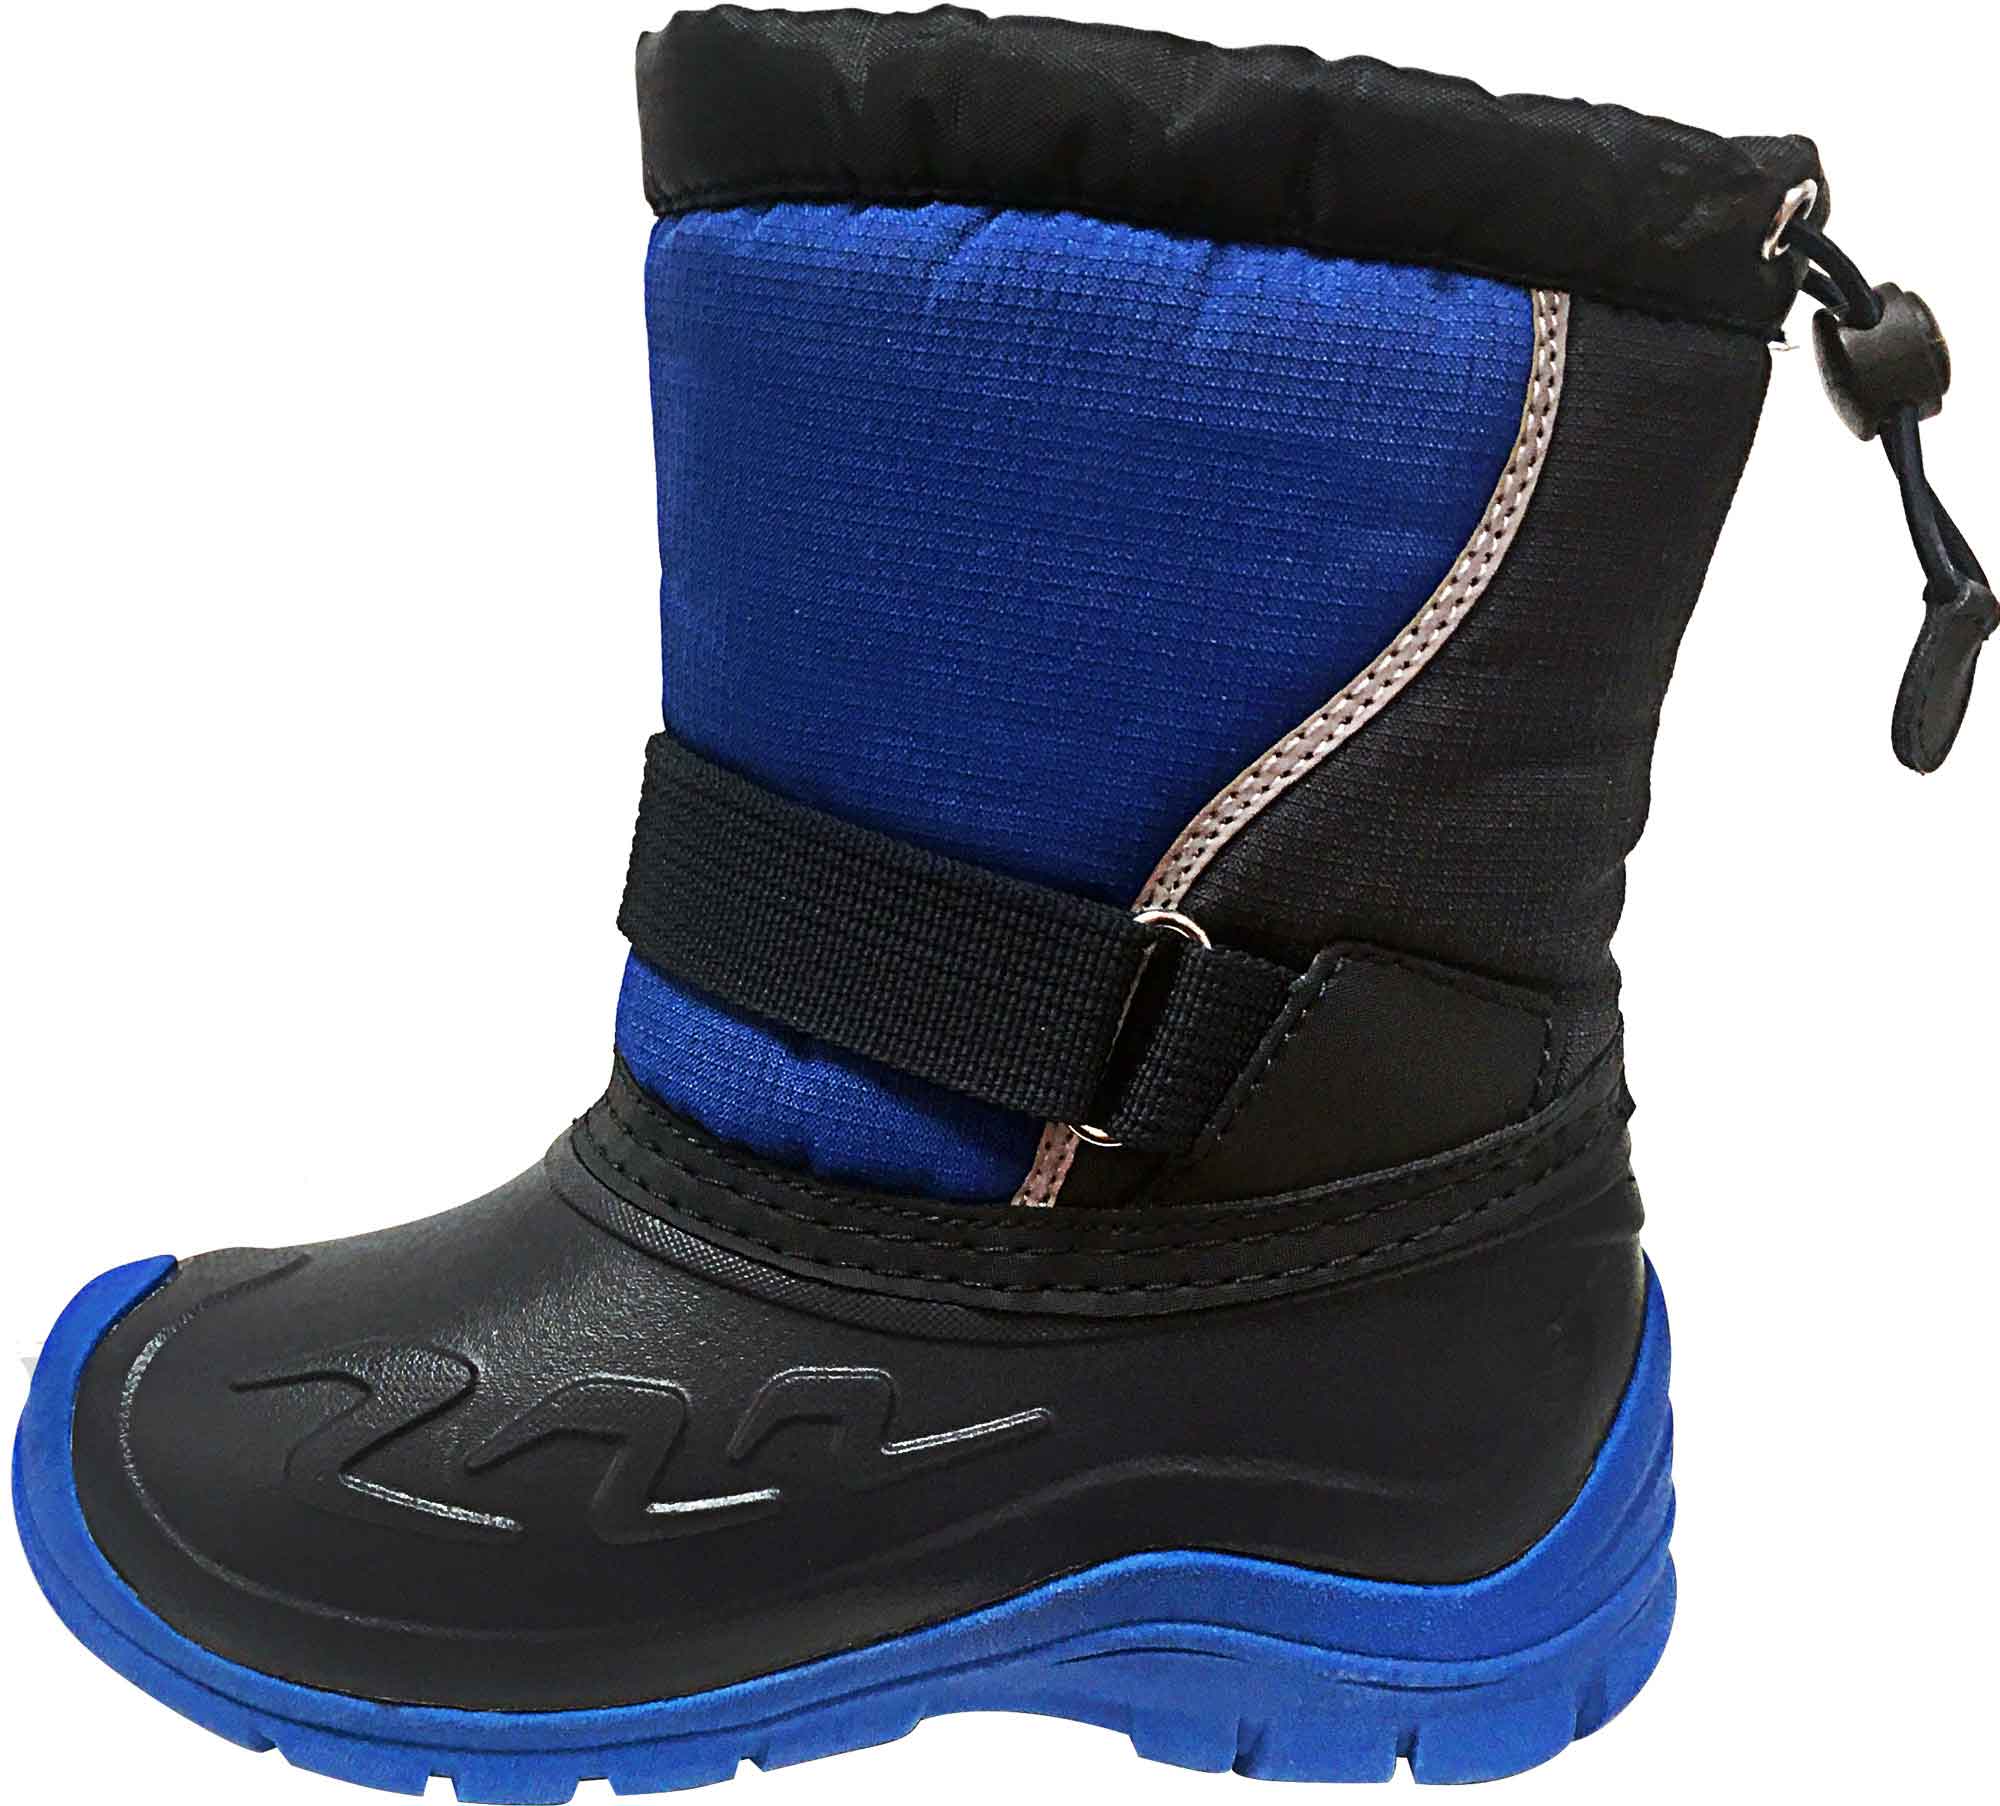 Kids' winter footwear